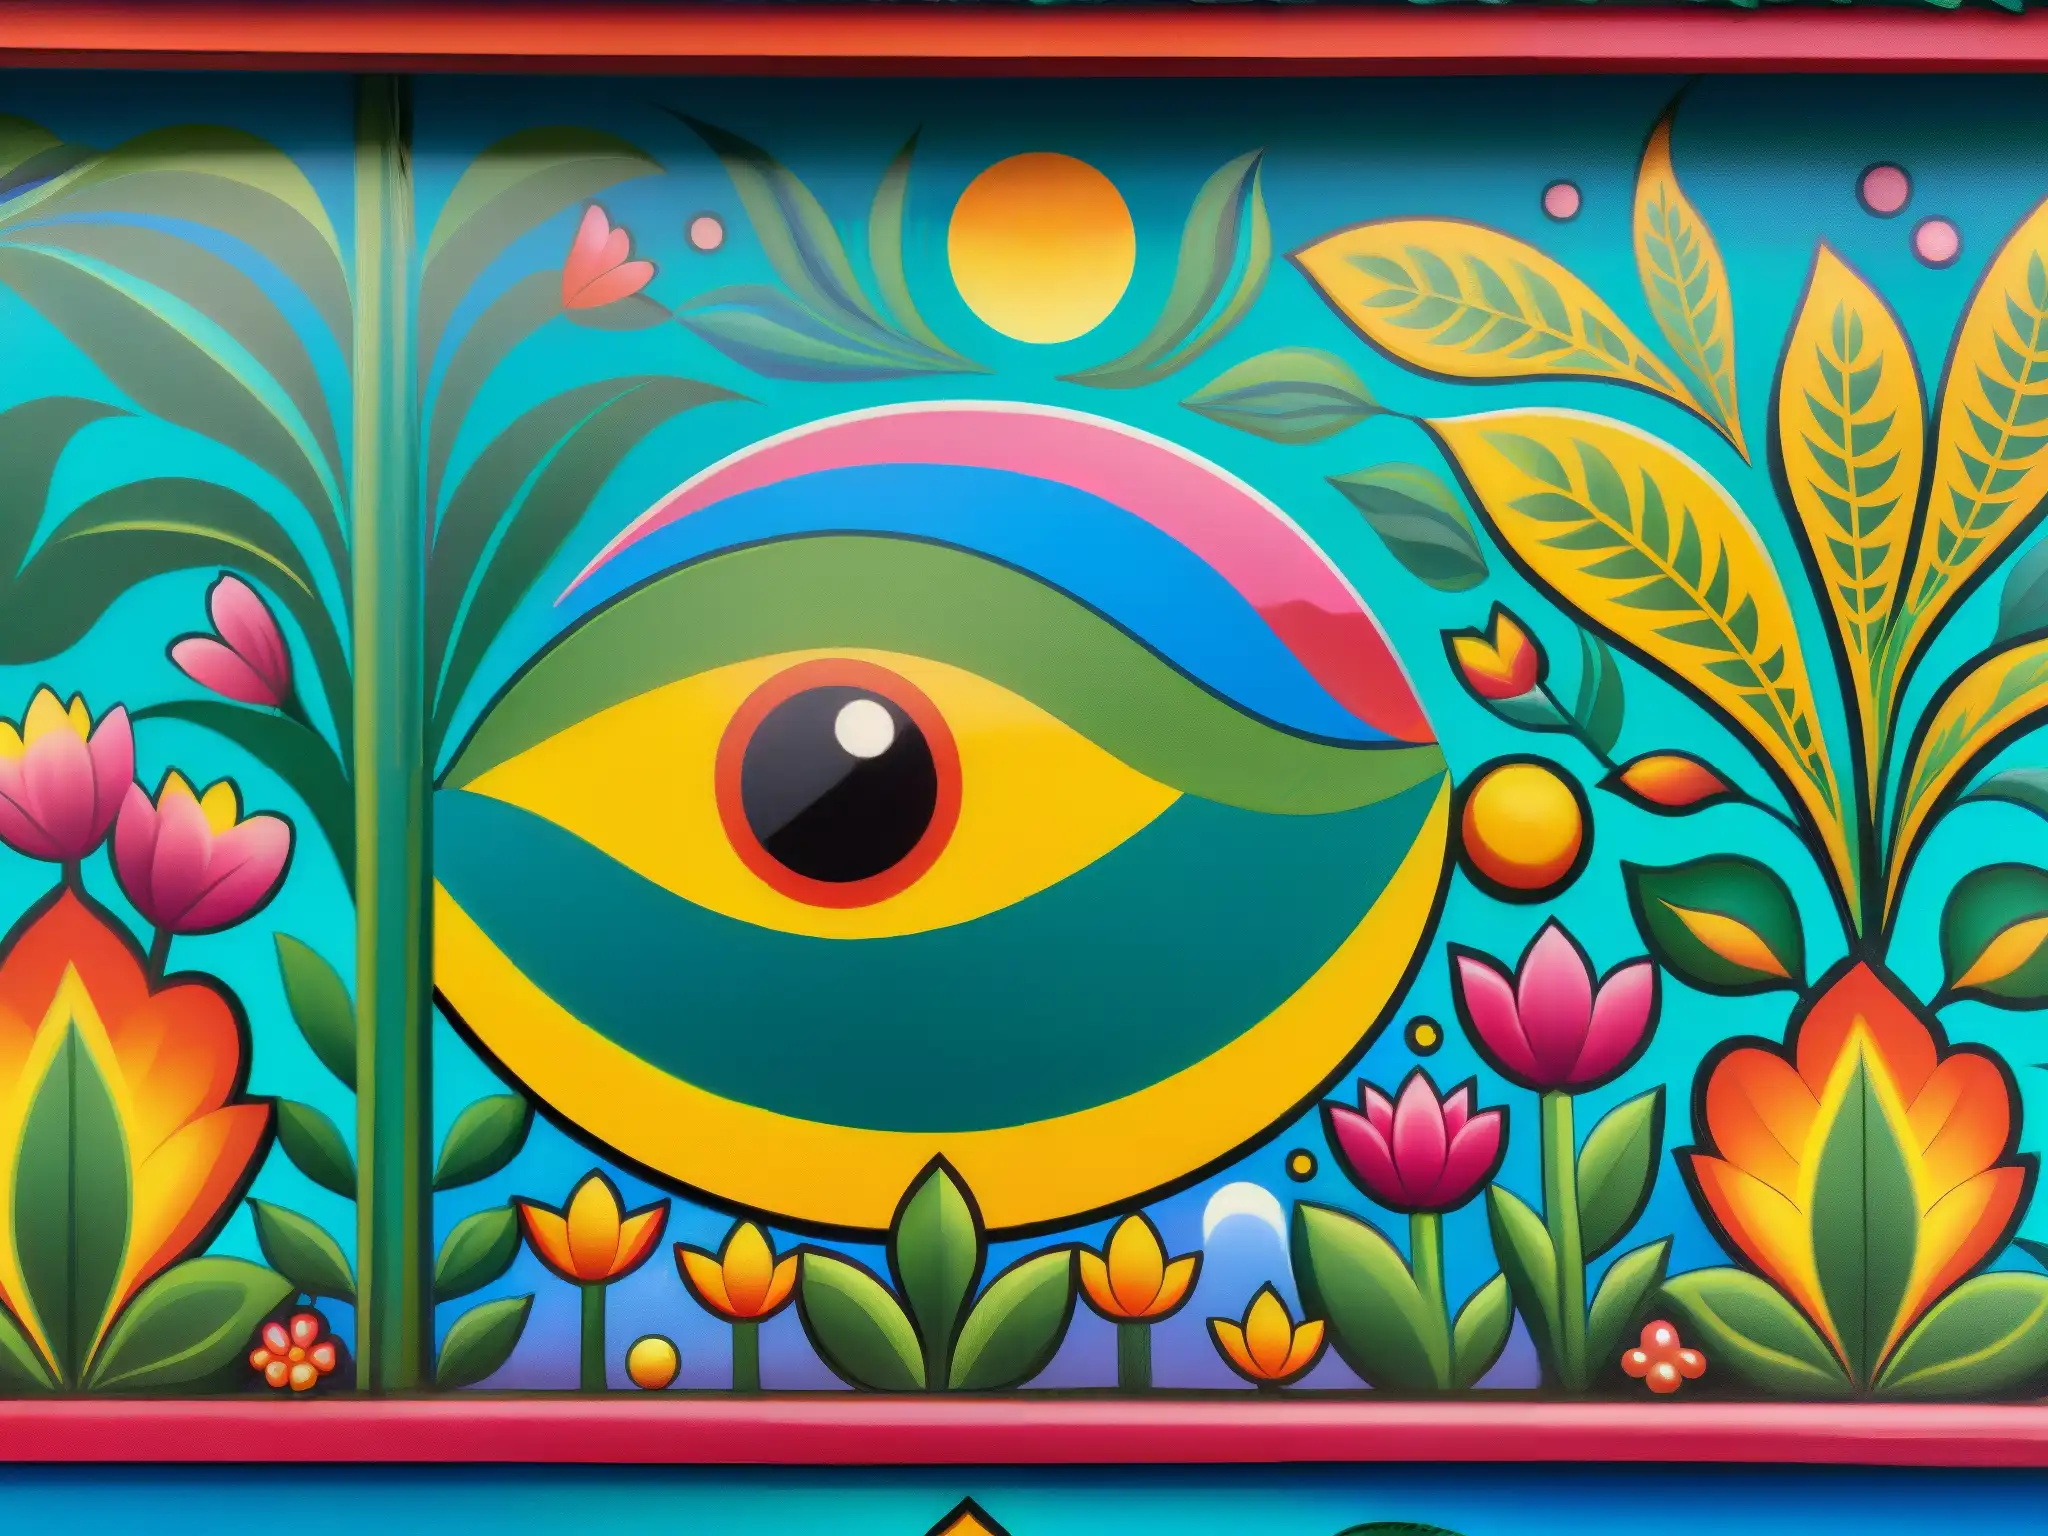 Detalle vibrante del mural de la mitología del ajolote en Xochimilco, con colores y símbolos indígenas